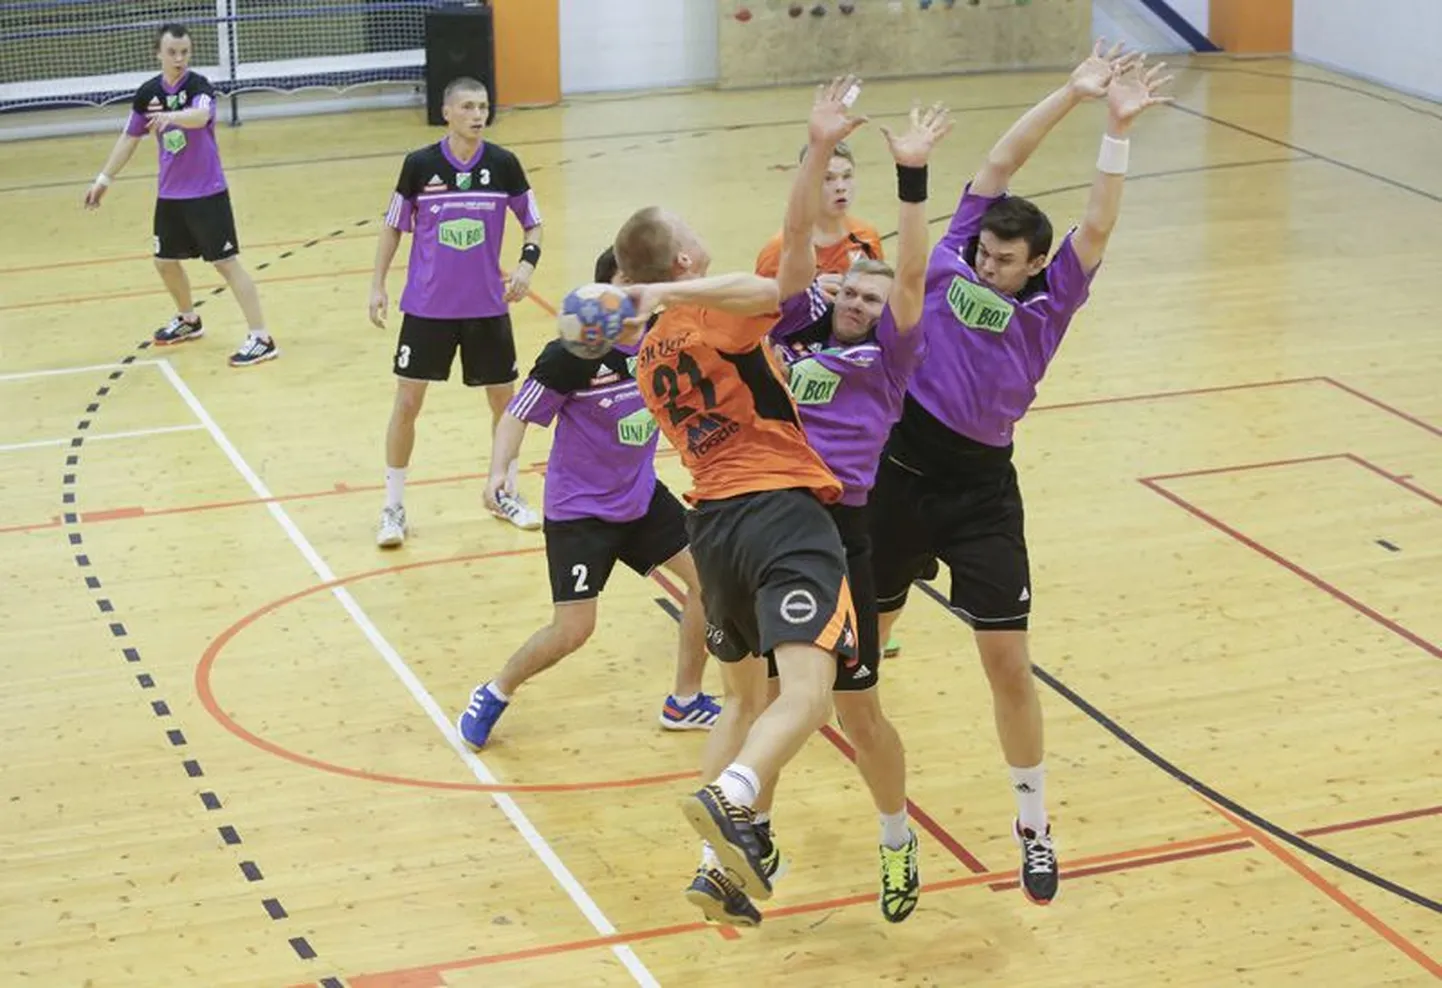 SK Tapa noorte meeste meistriliiga käsipallimeeskond ­võitleb jõulises mängus tugevate vastastega.